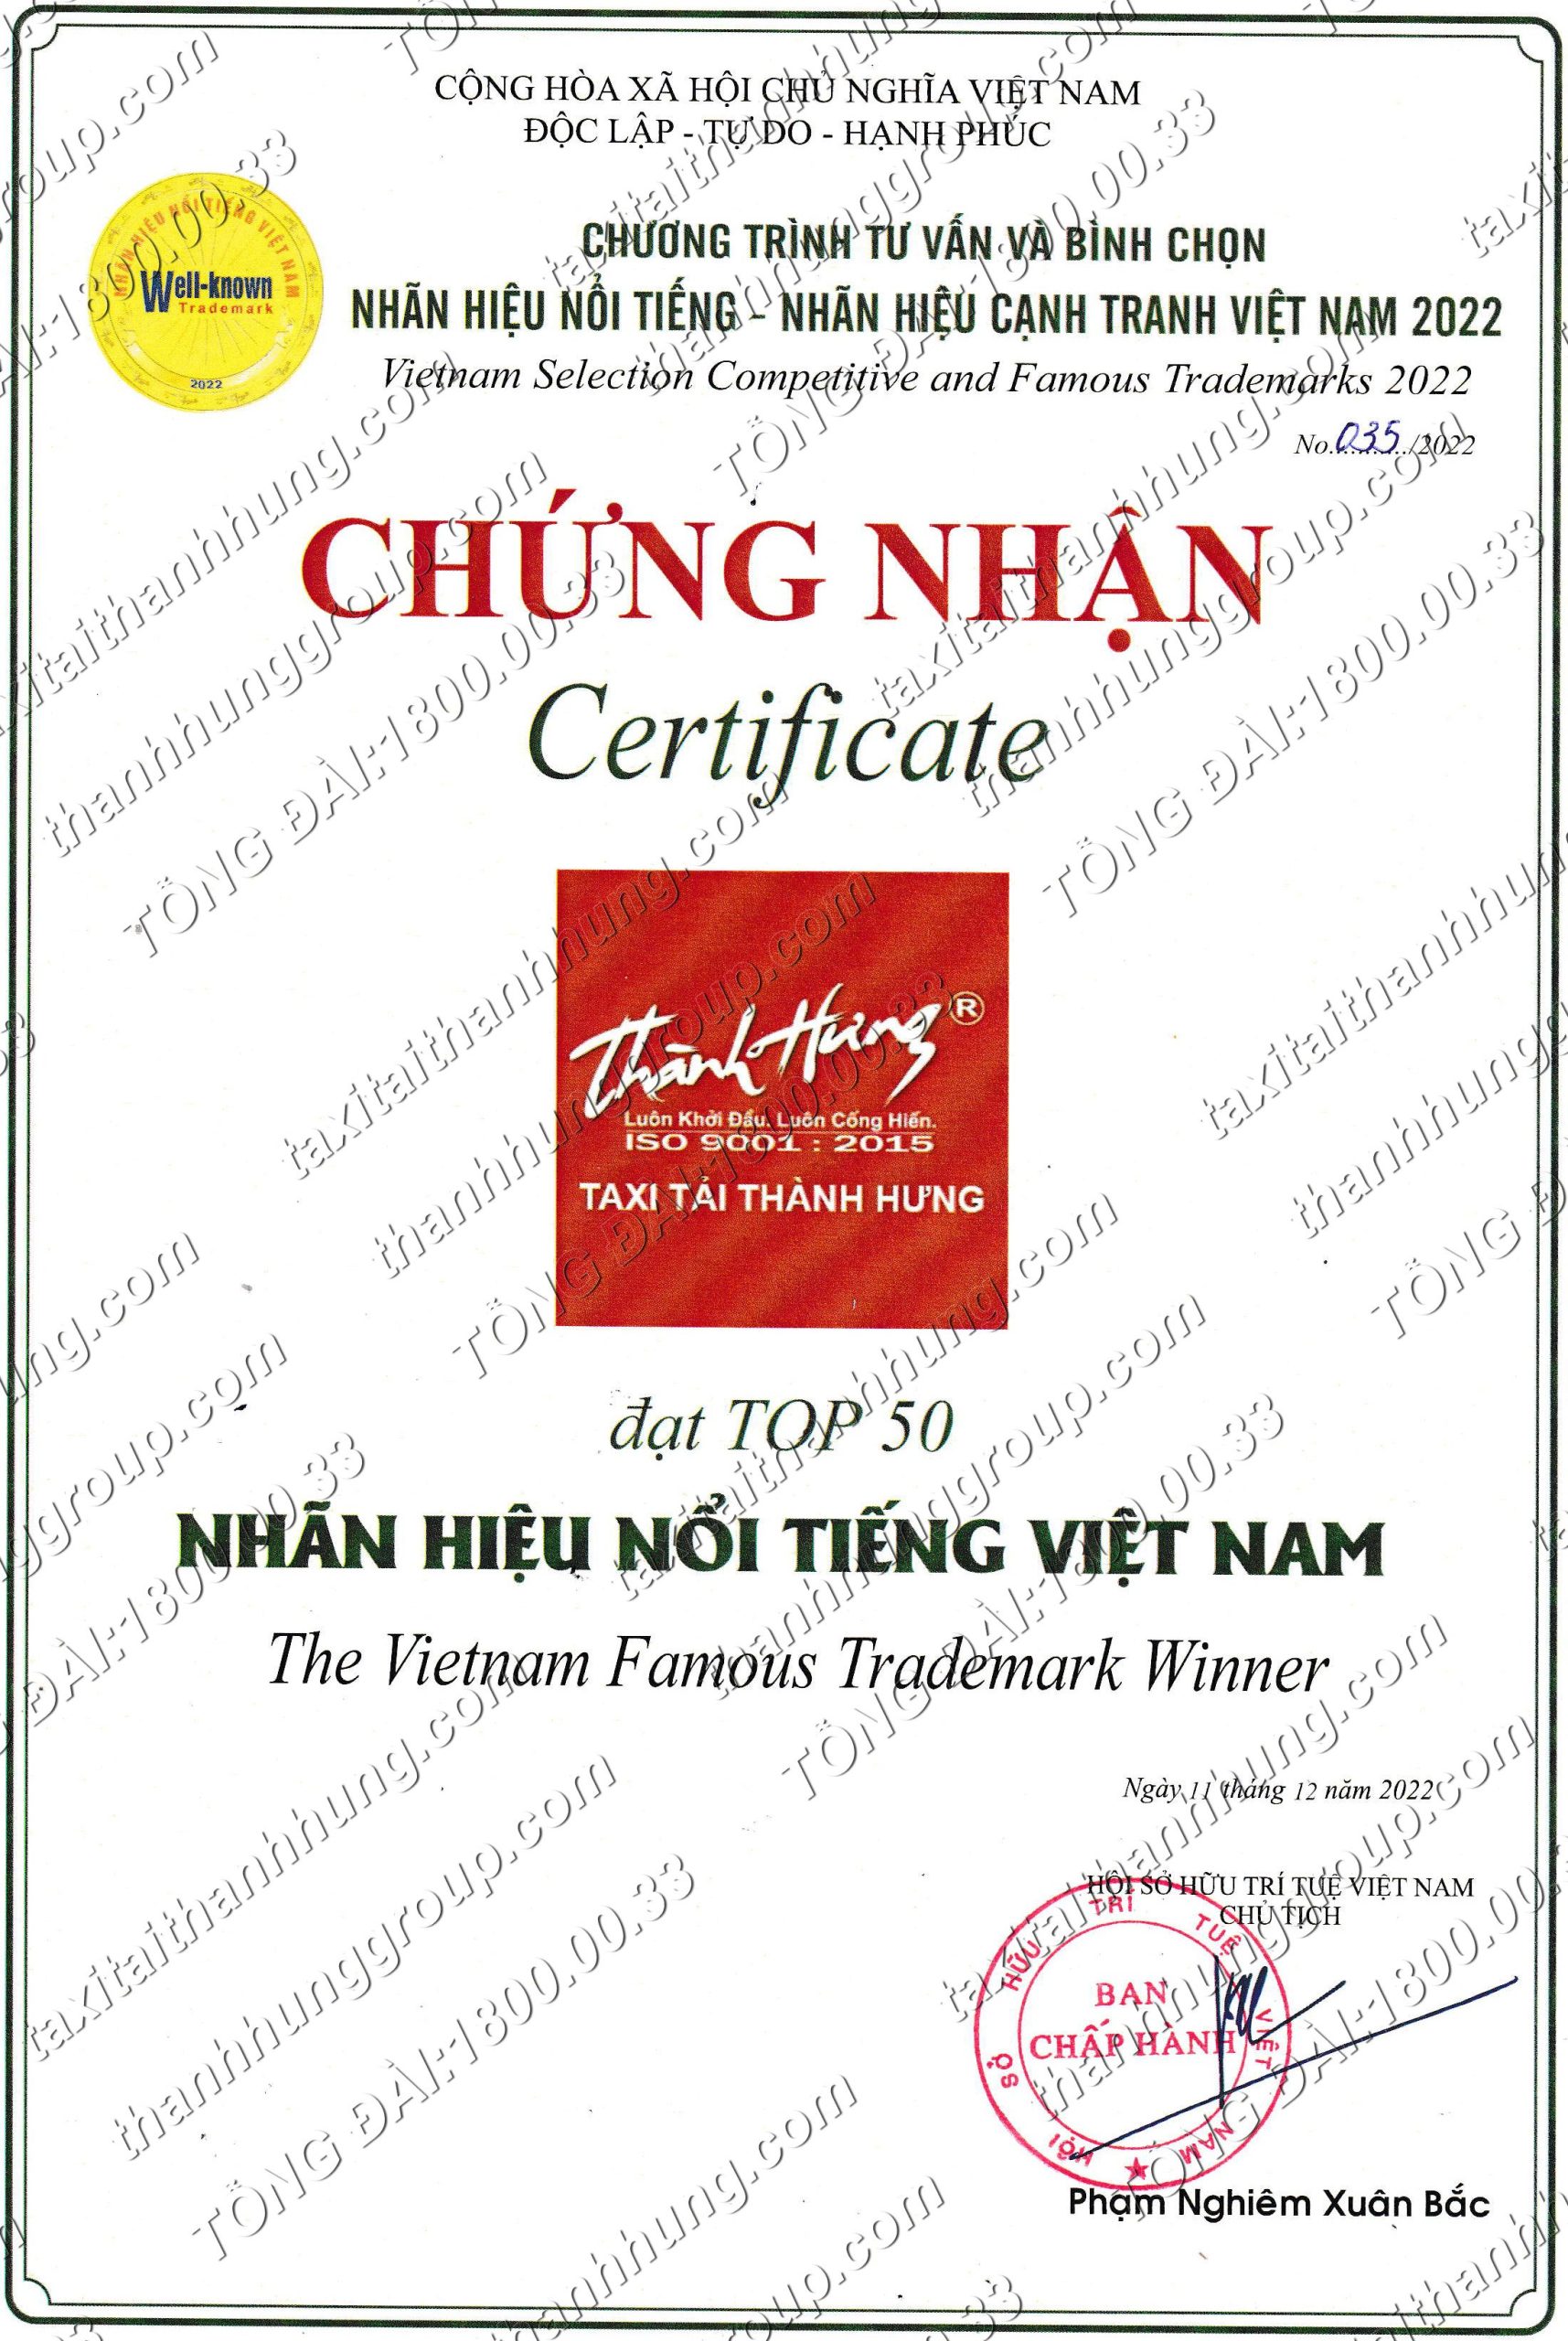 https://taxitaithanhhung.com/taxi-tai-thanh-hung-dat-top-50-nhan-hieu-noi-tieng-nhan-hieu-canh-tranh-viet-nam-nam-2022/